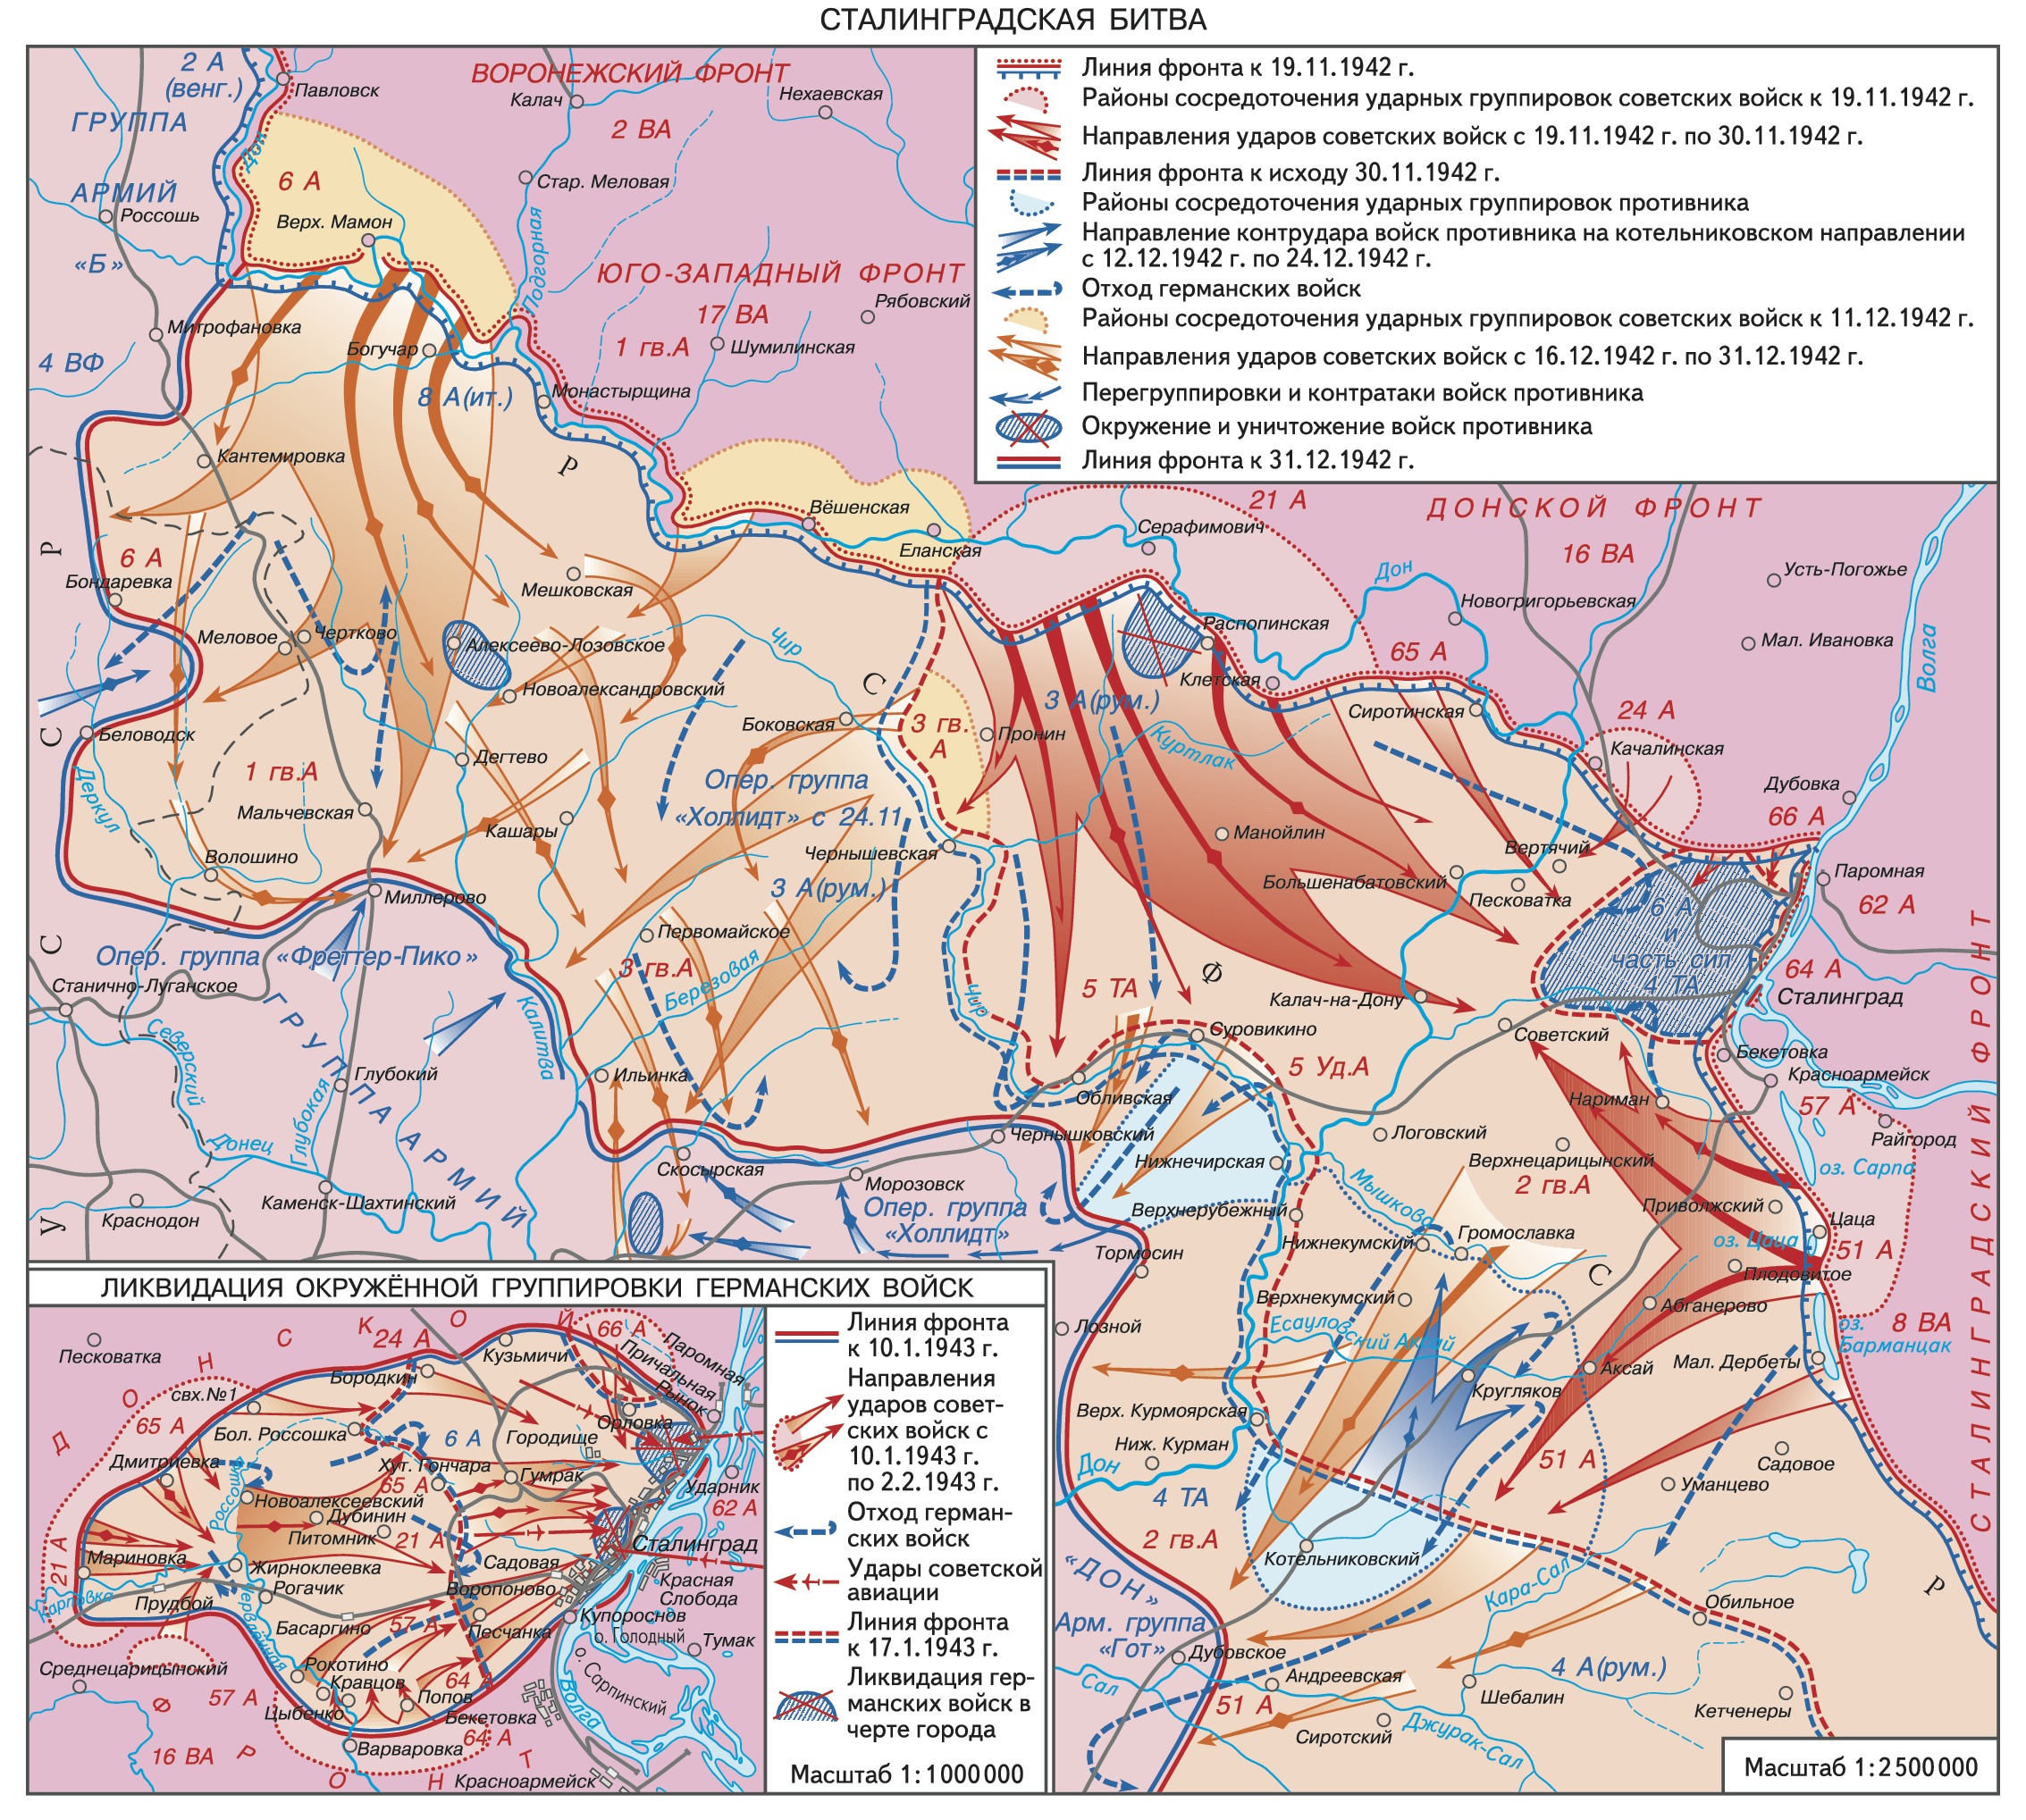 Сталинградская стратегическая наступательная операция. Карта Сталинградской битвы 1942-1943. Карта Сталинградской битвы 1942 года. Сталинградская битва (17 июля 1942 — 2 февраля 1943 года) карта.